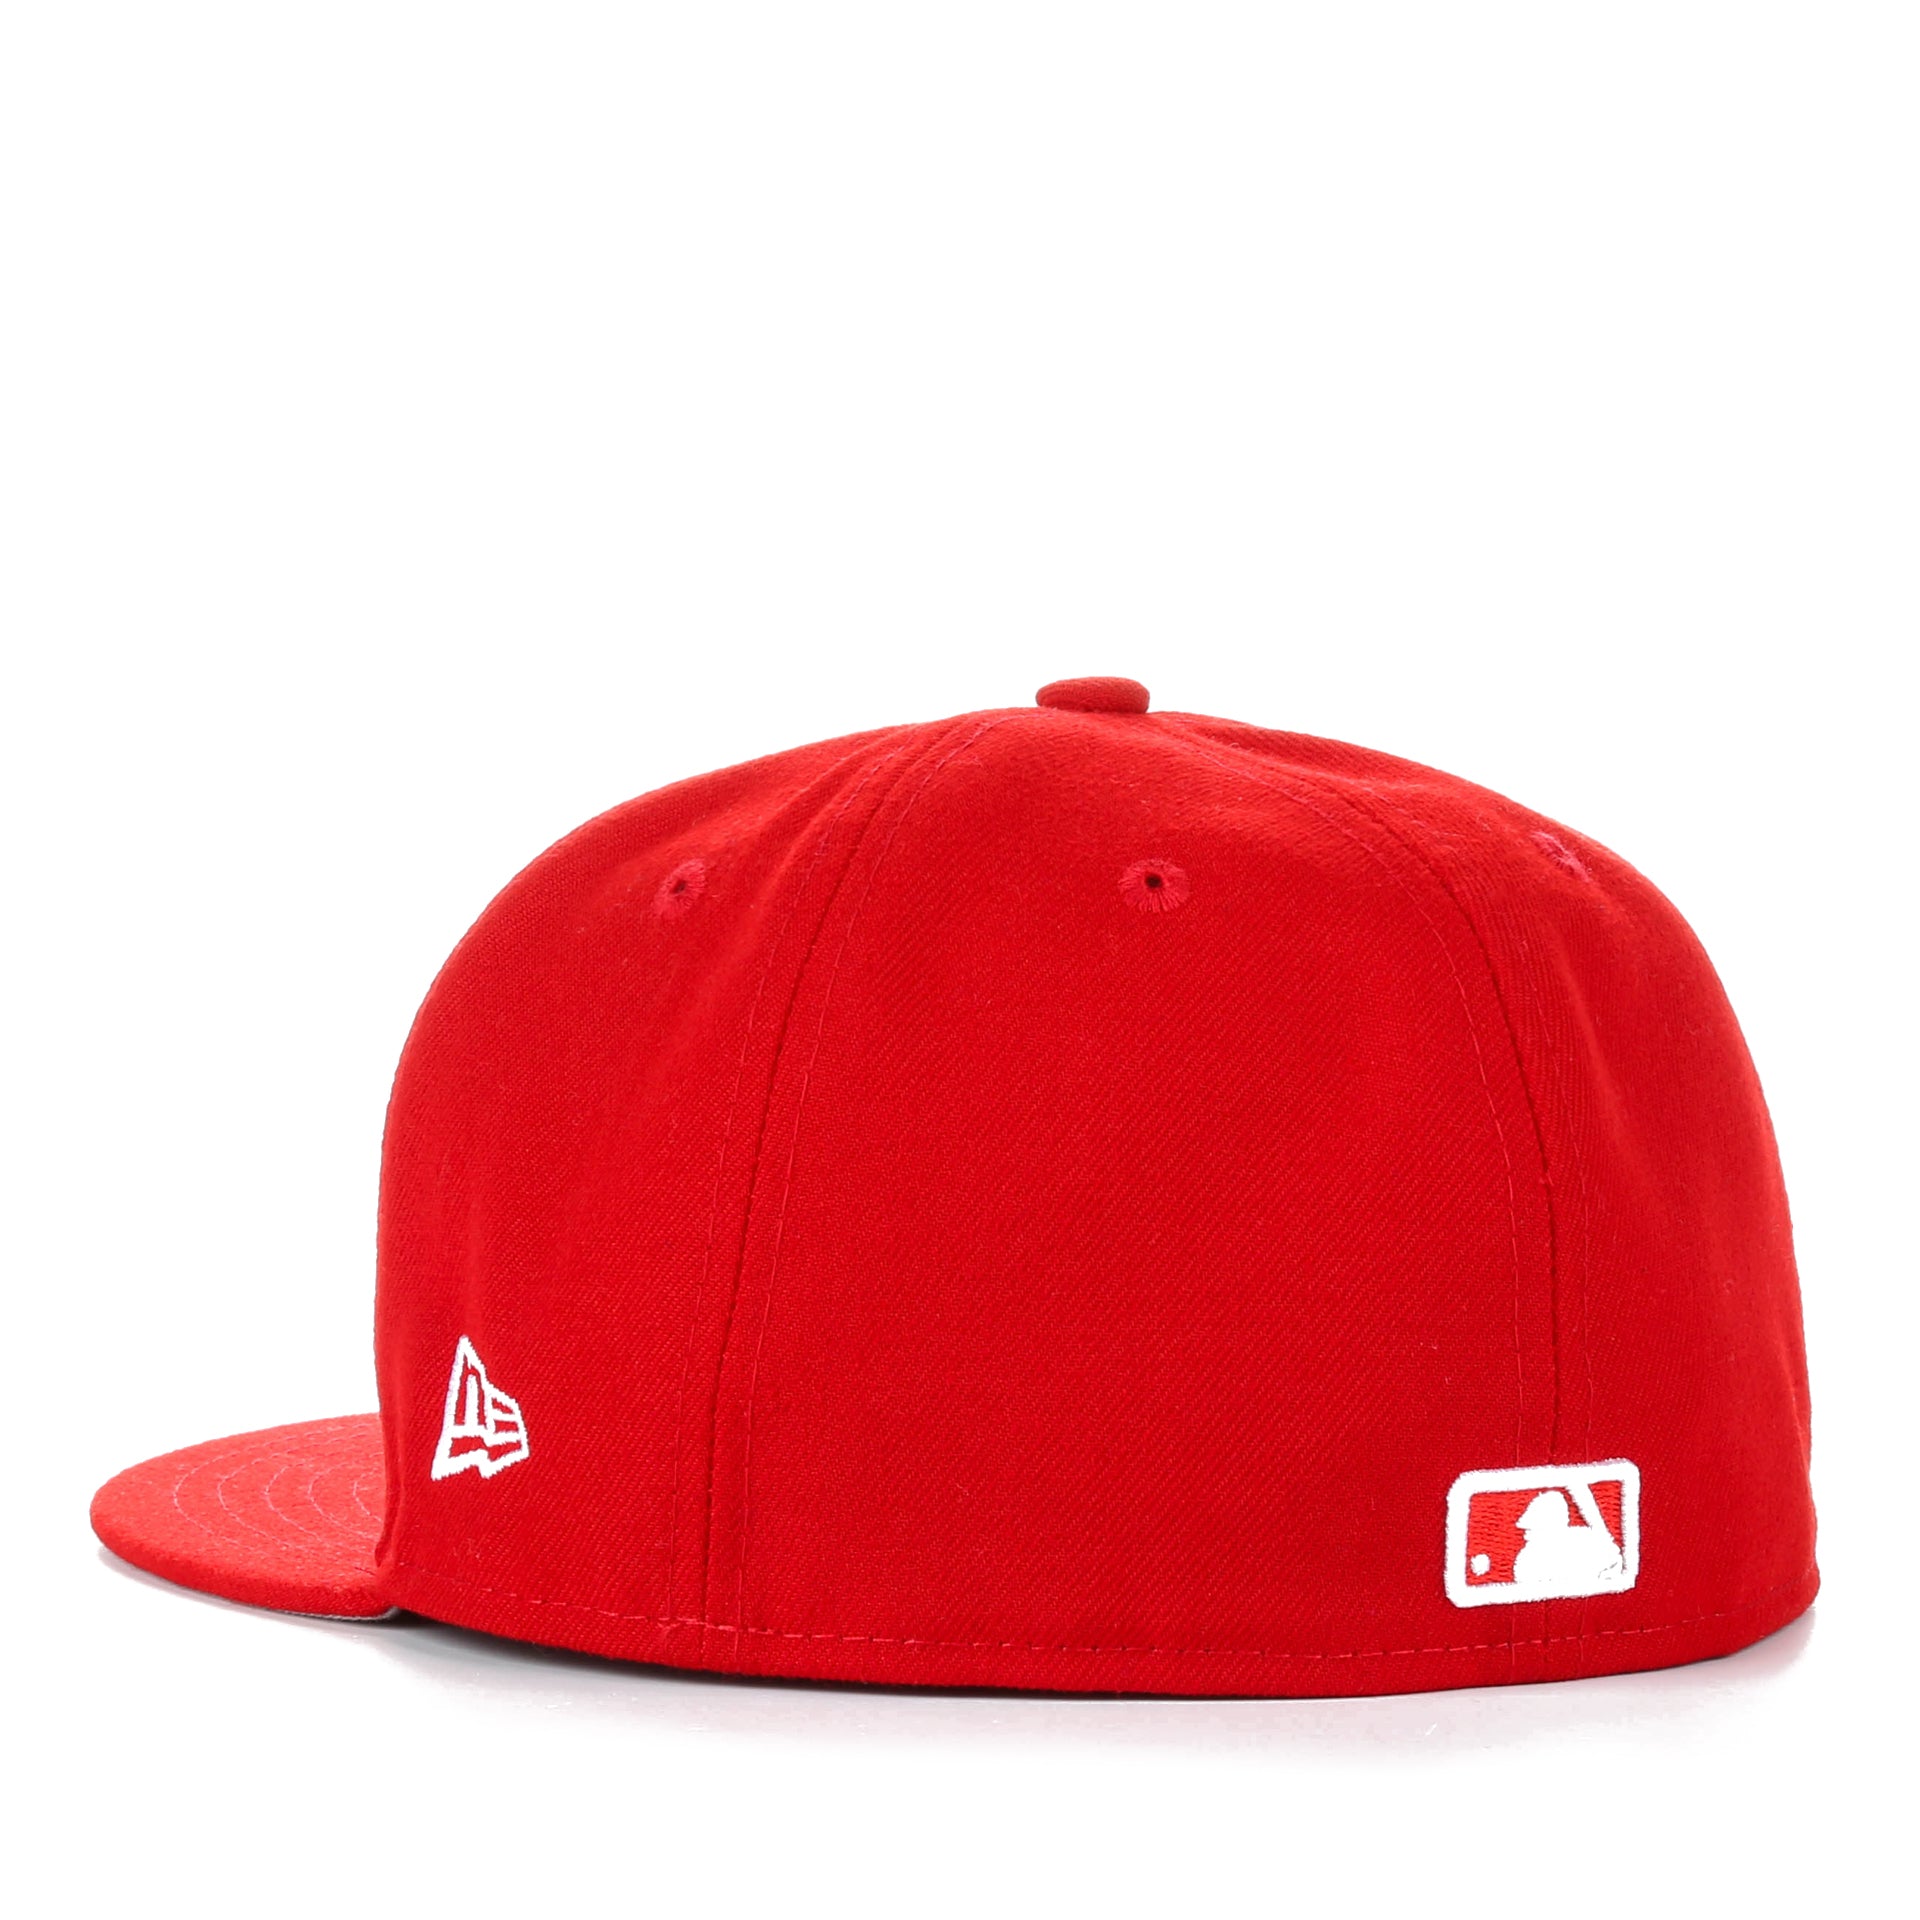 MLB, New Era Cap